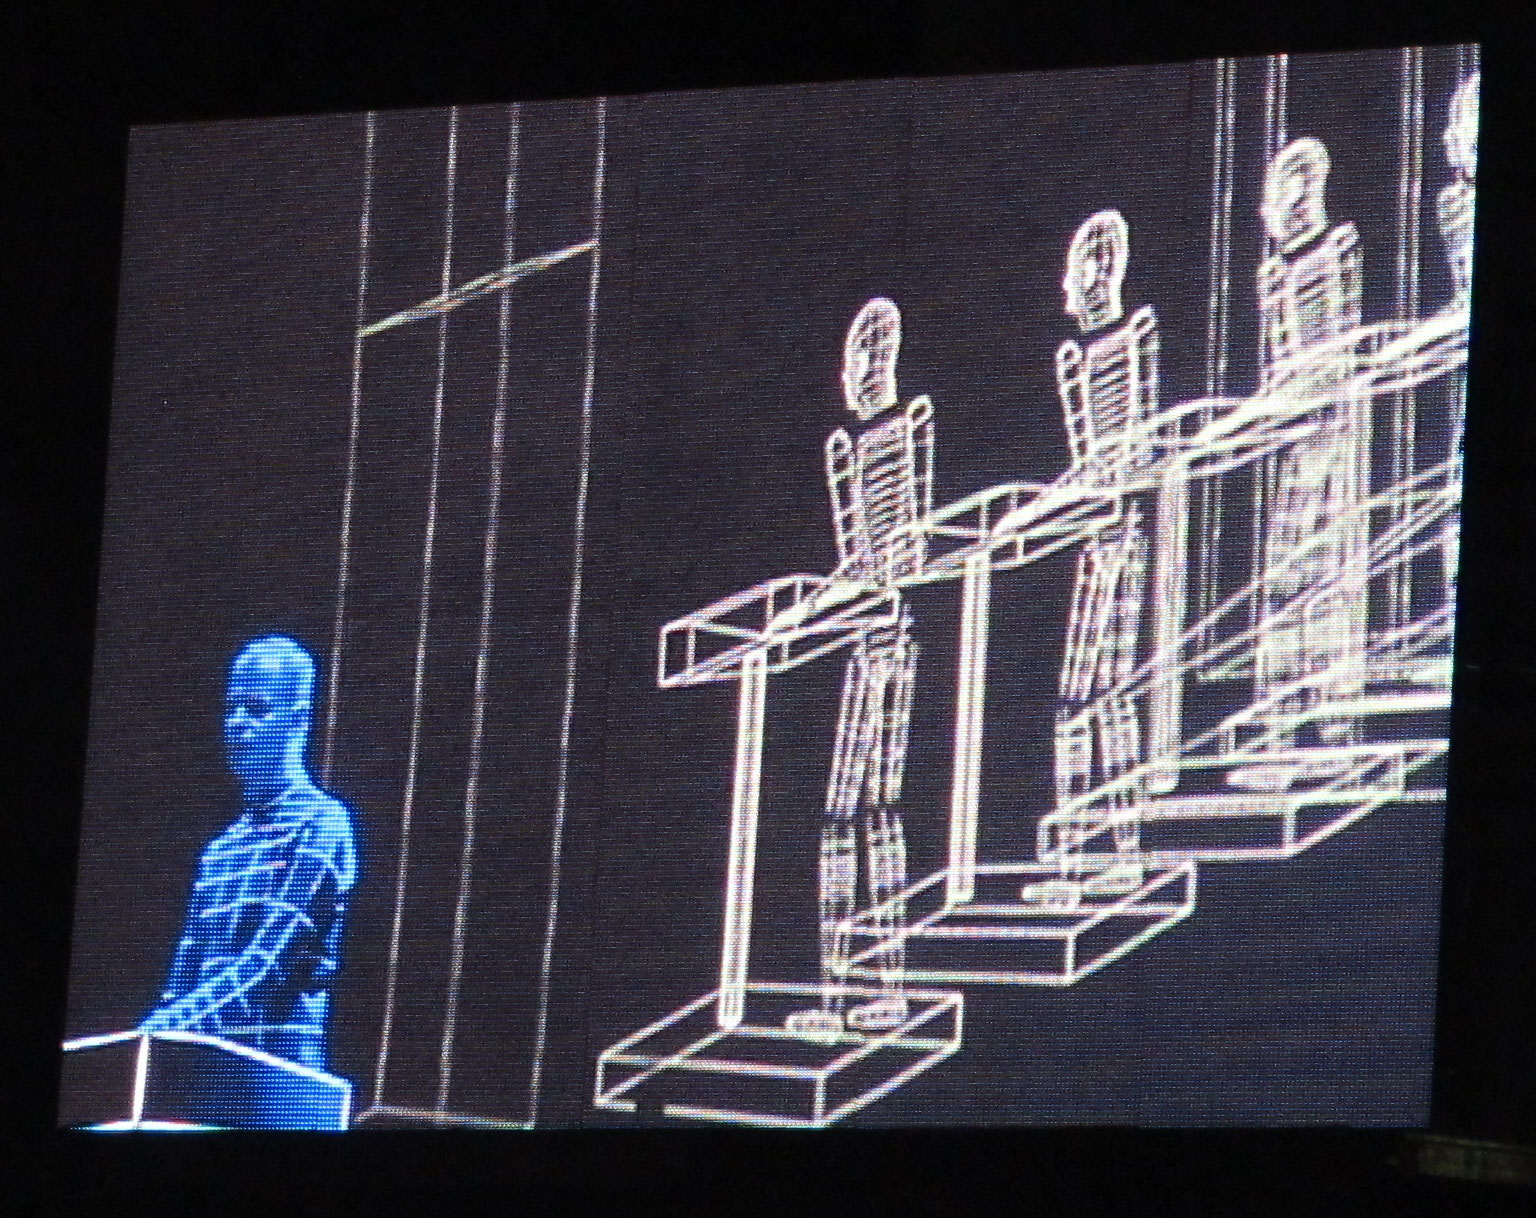 Auto-motive: Kraftwerk showcase their assets